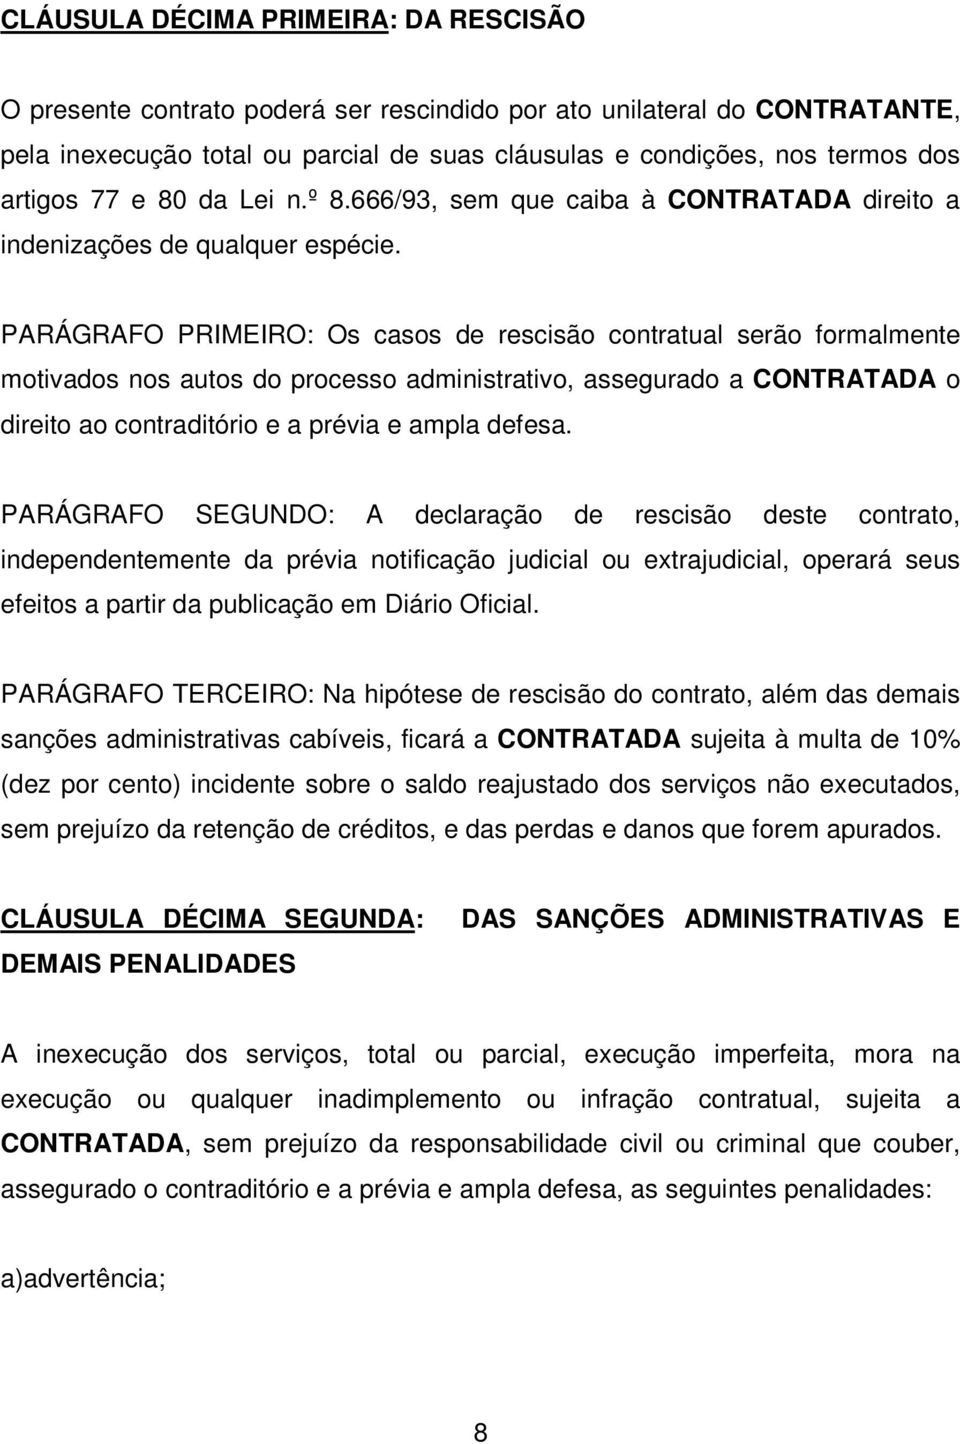 PARÁGRAFO PRIMEIRO: Os casos de rescisão contratual serão formalmente motivados nos autos do processo administrativo, assegurado a CONTRATADA o direito ao contraditório e a prévia e ampla defesa.